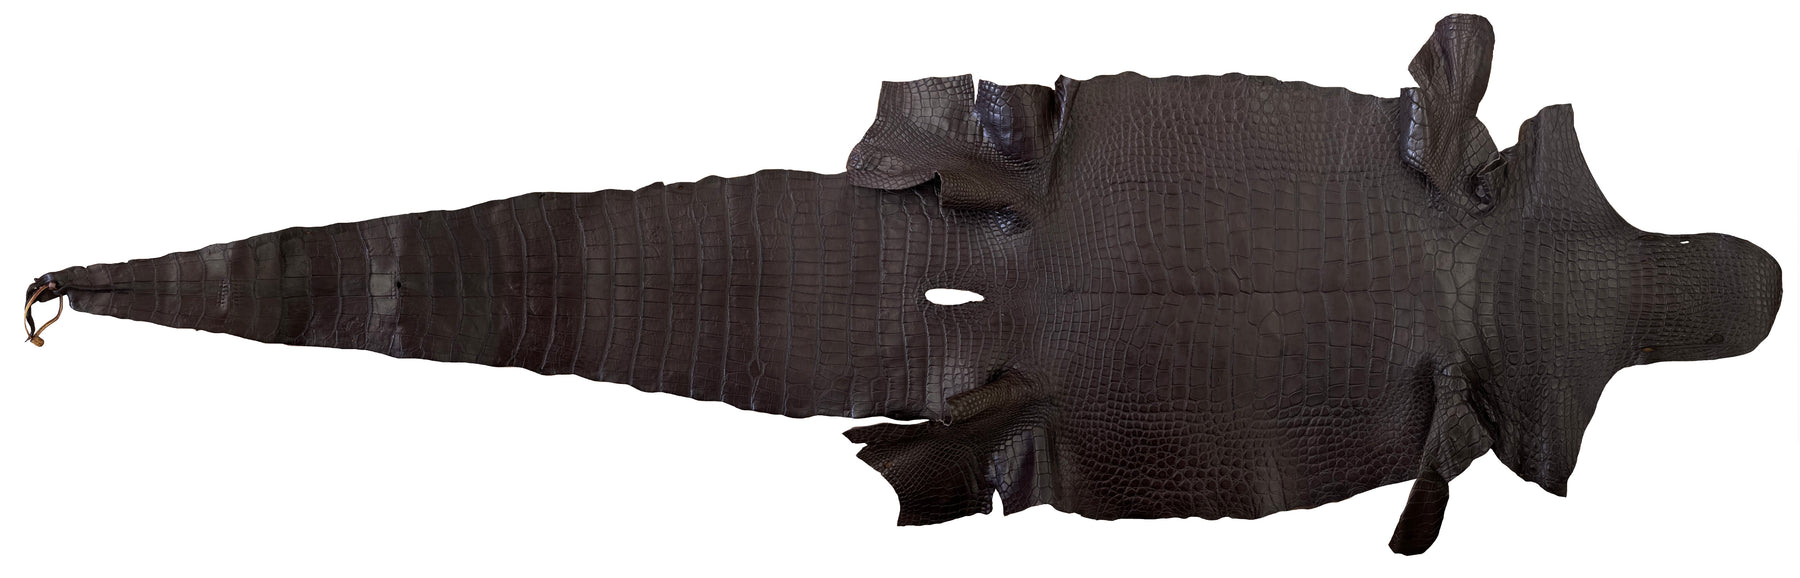 Wild American Alligator Dark Brown | 56 cm